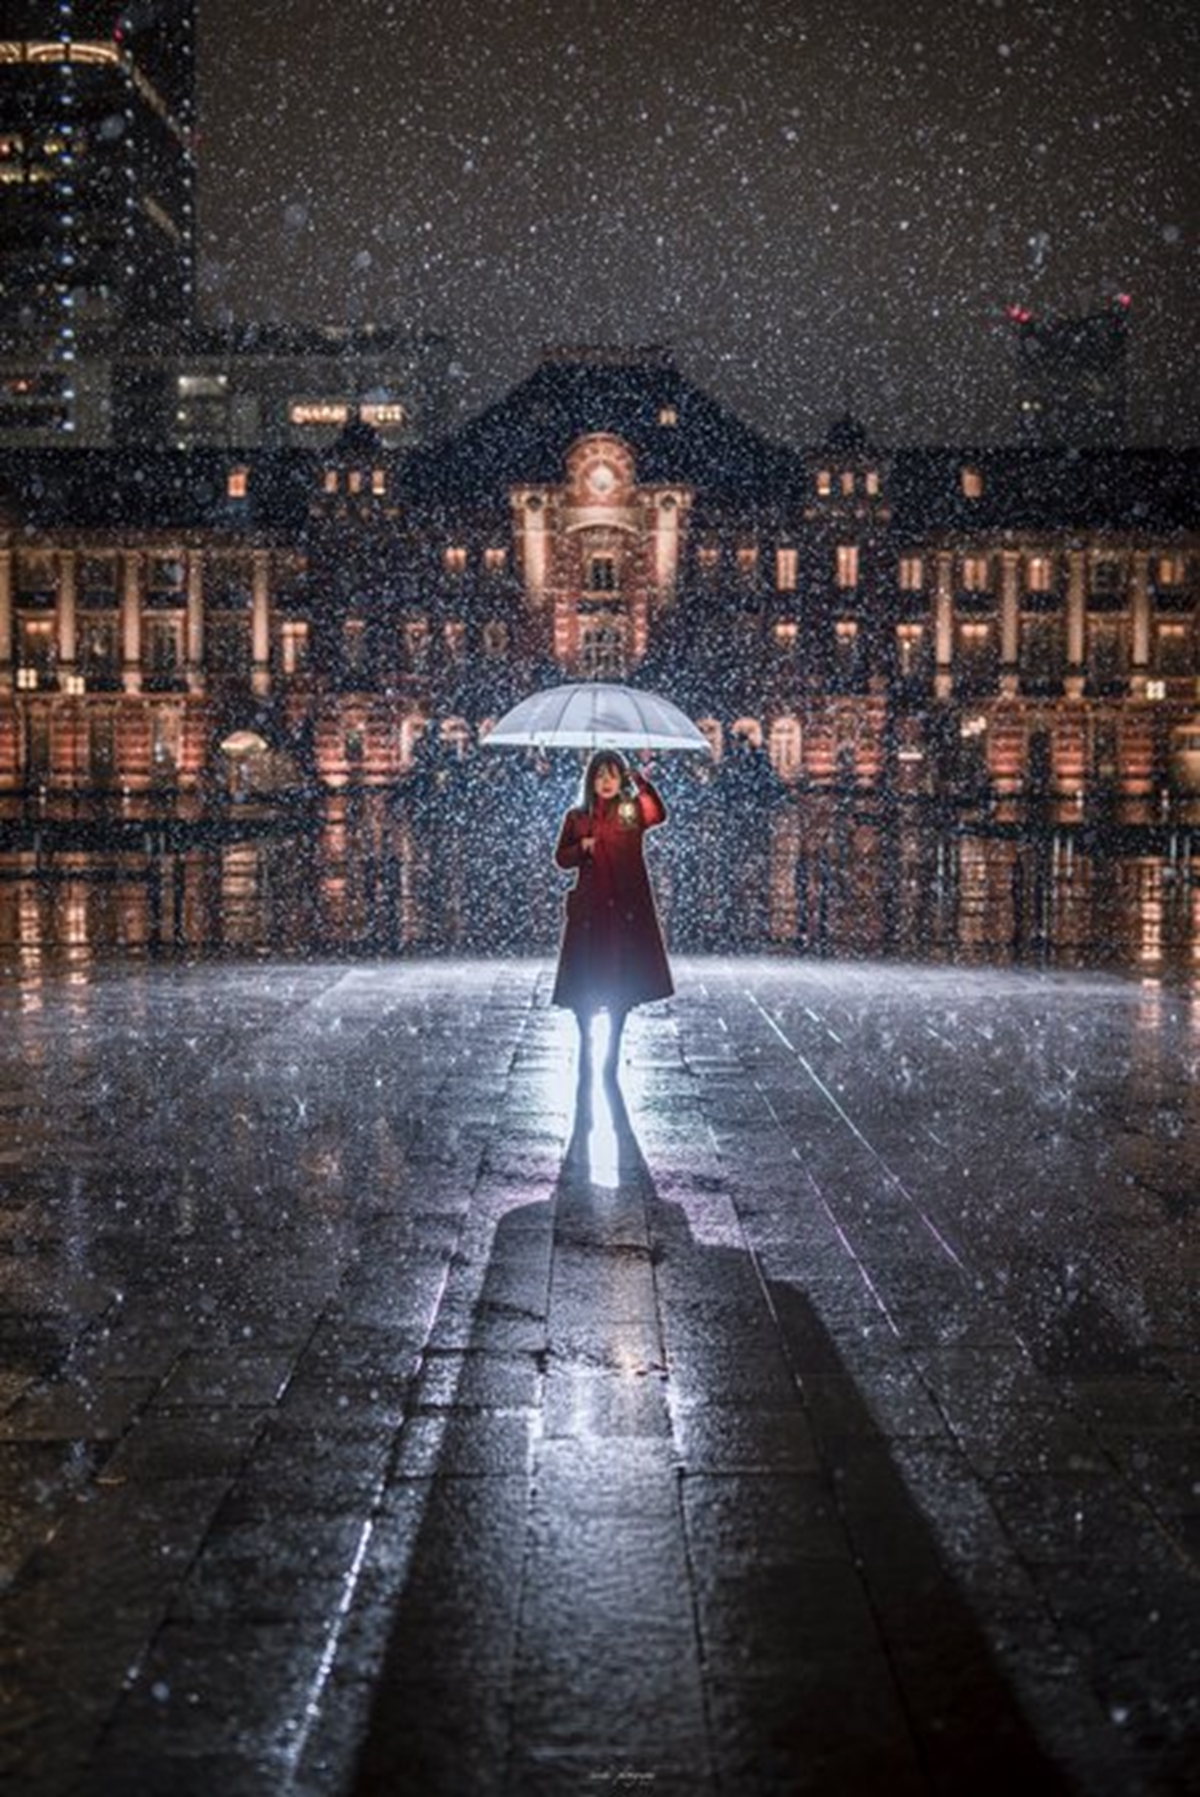 映画のワンシーンみたい 幻想的 大雪警報の夜に東京駅で撮影された写真が美しすぎると話題に ねとらぼ